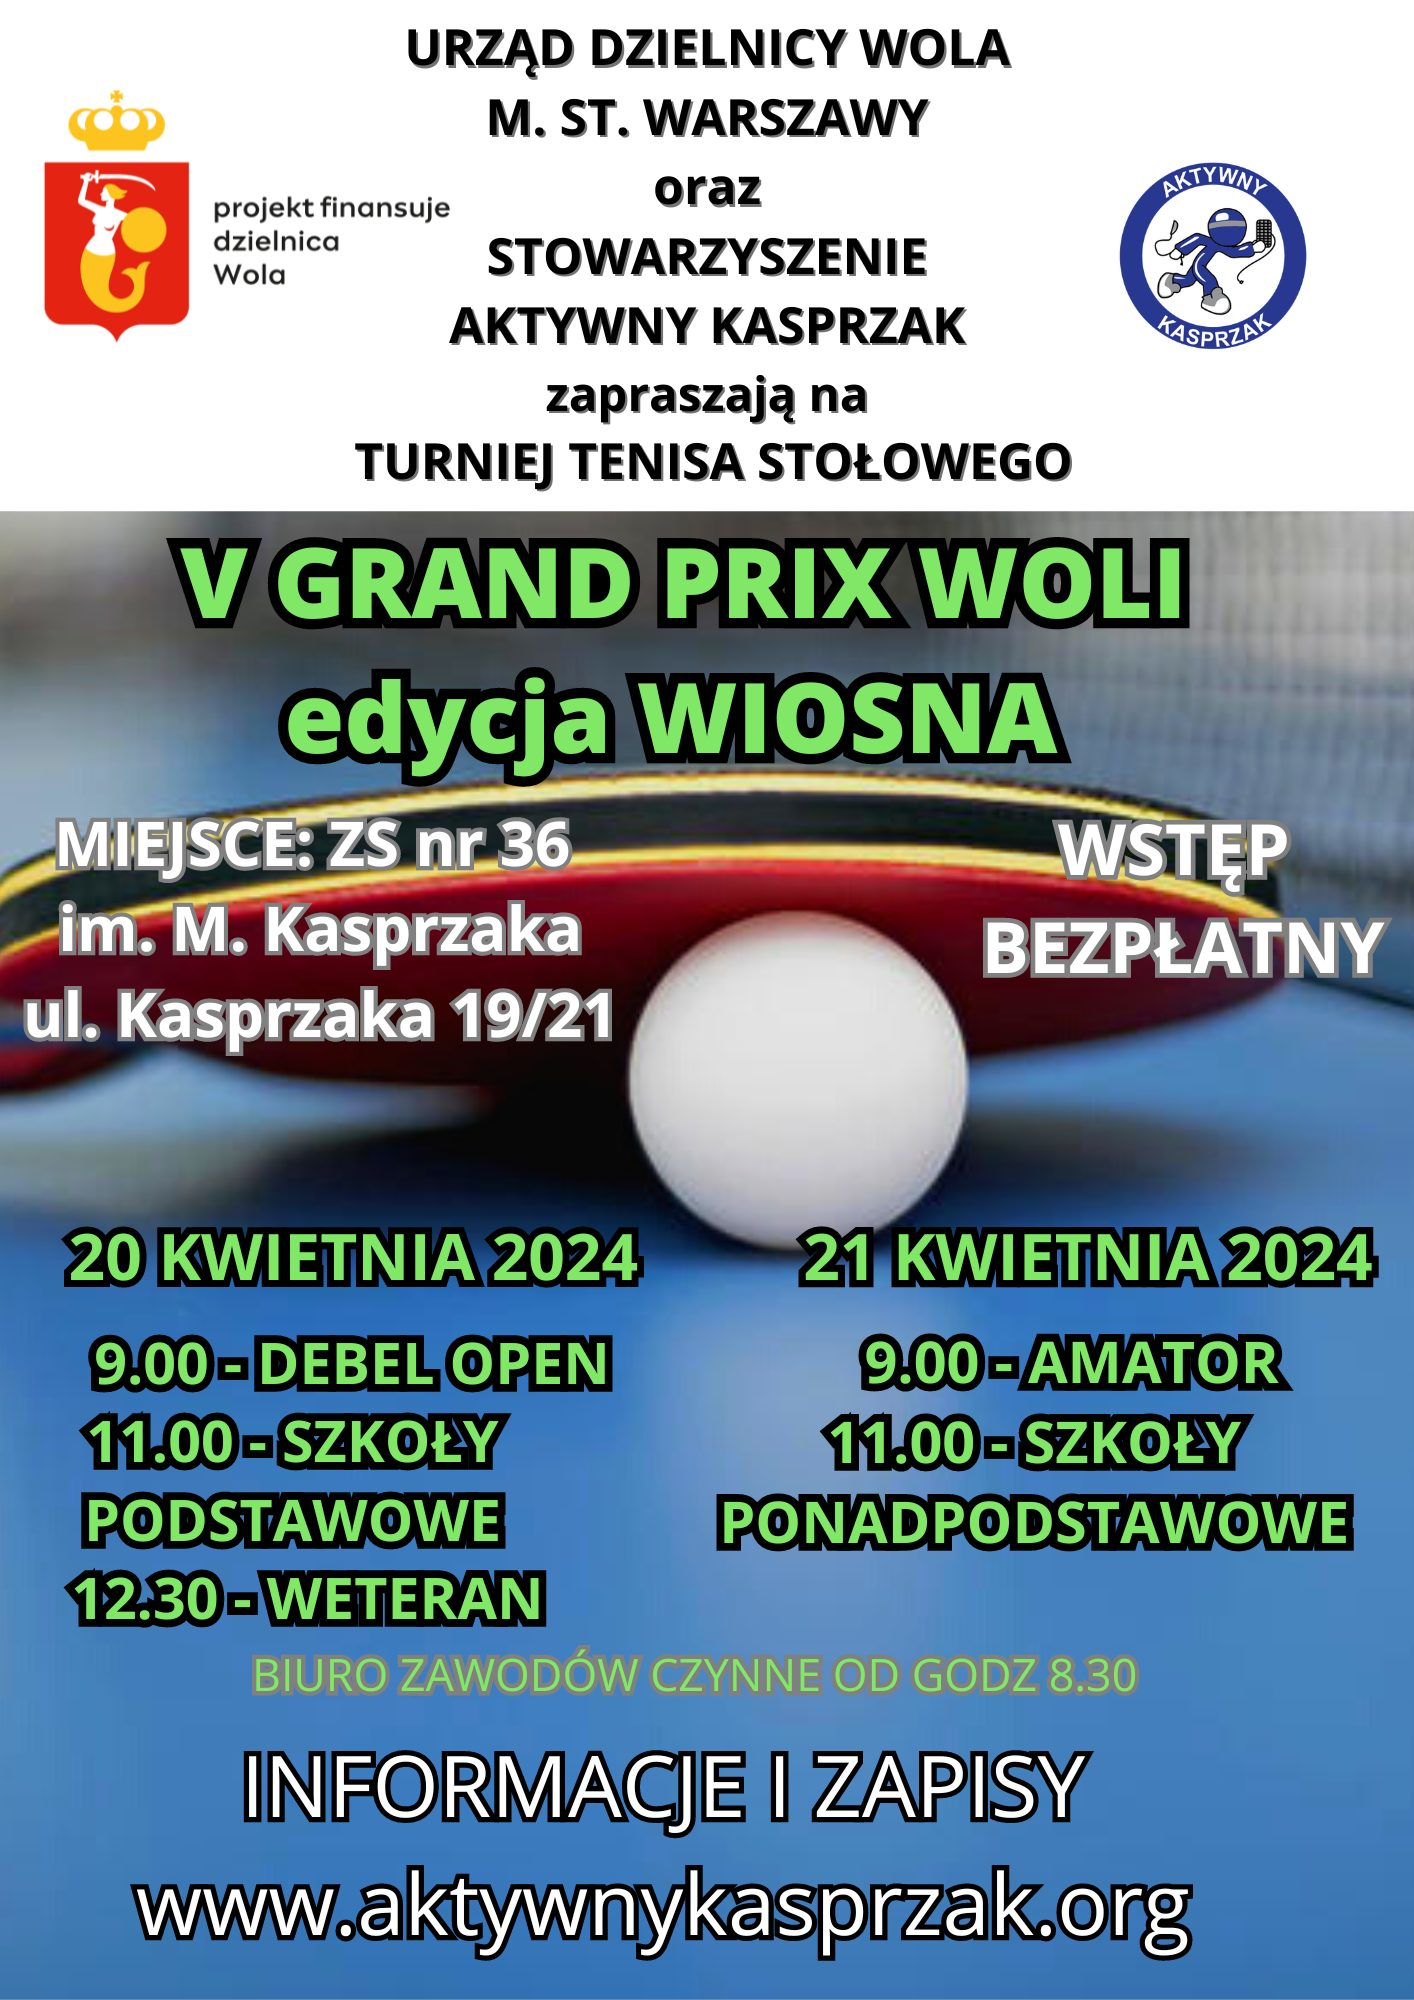 Plakat turnieju Turniej tenisa stołowego V GRAND PRIX WOLA edycja WIOSNA (20 kwietnia 2024)  (debel, open)